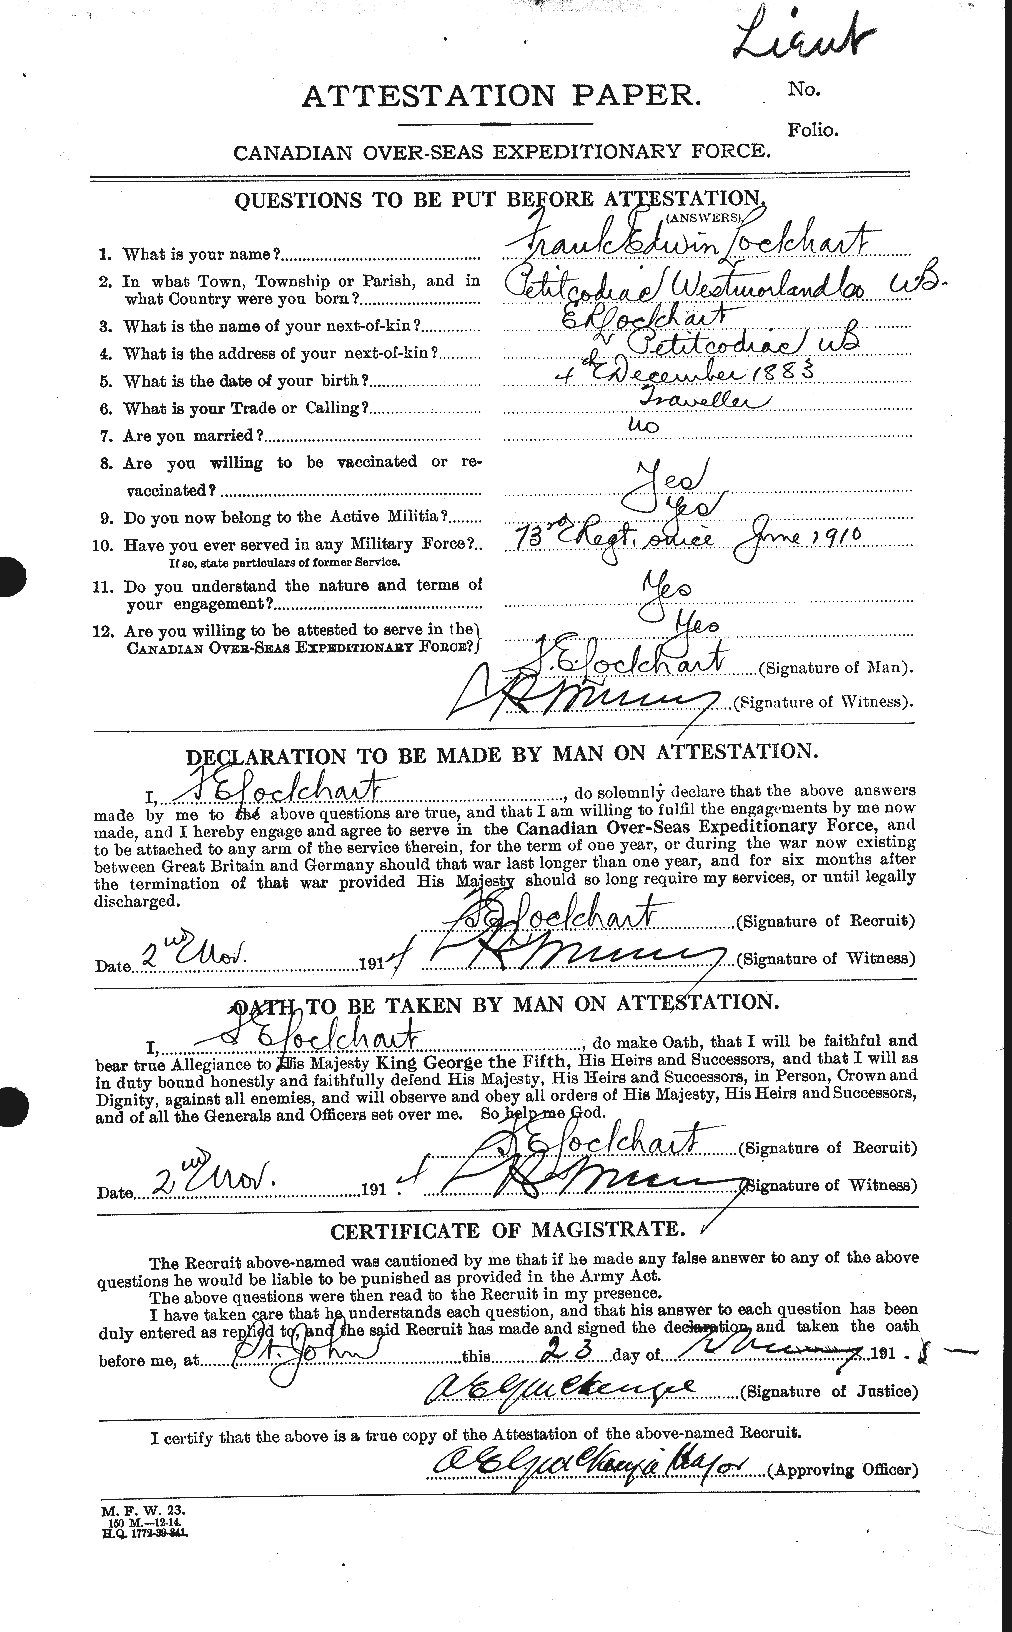 Dossiers du Personnel de la Première Guerre mondiale - CEC 474501a